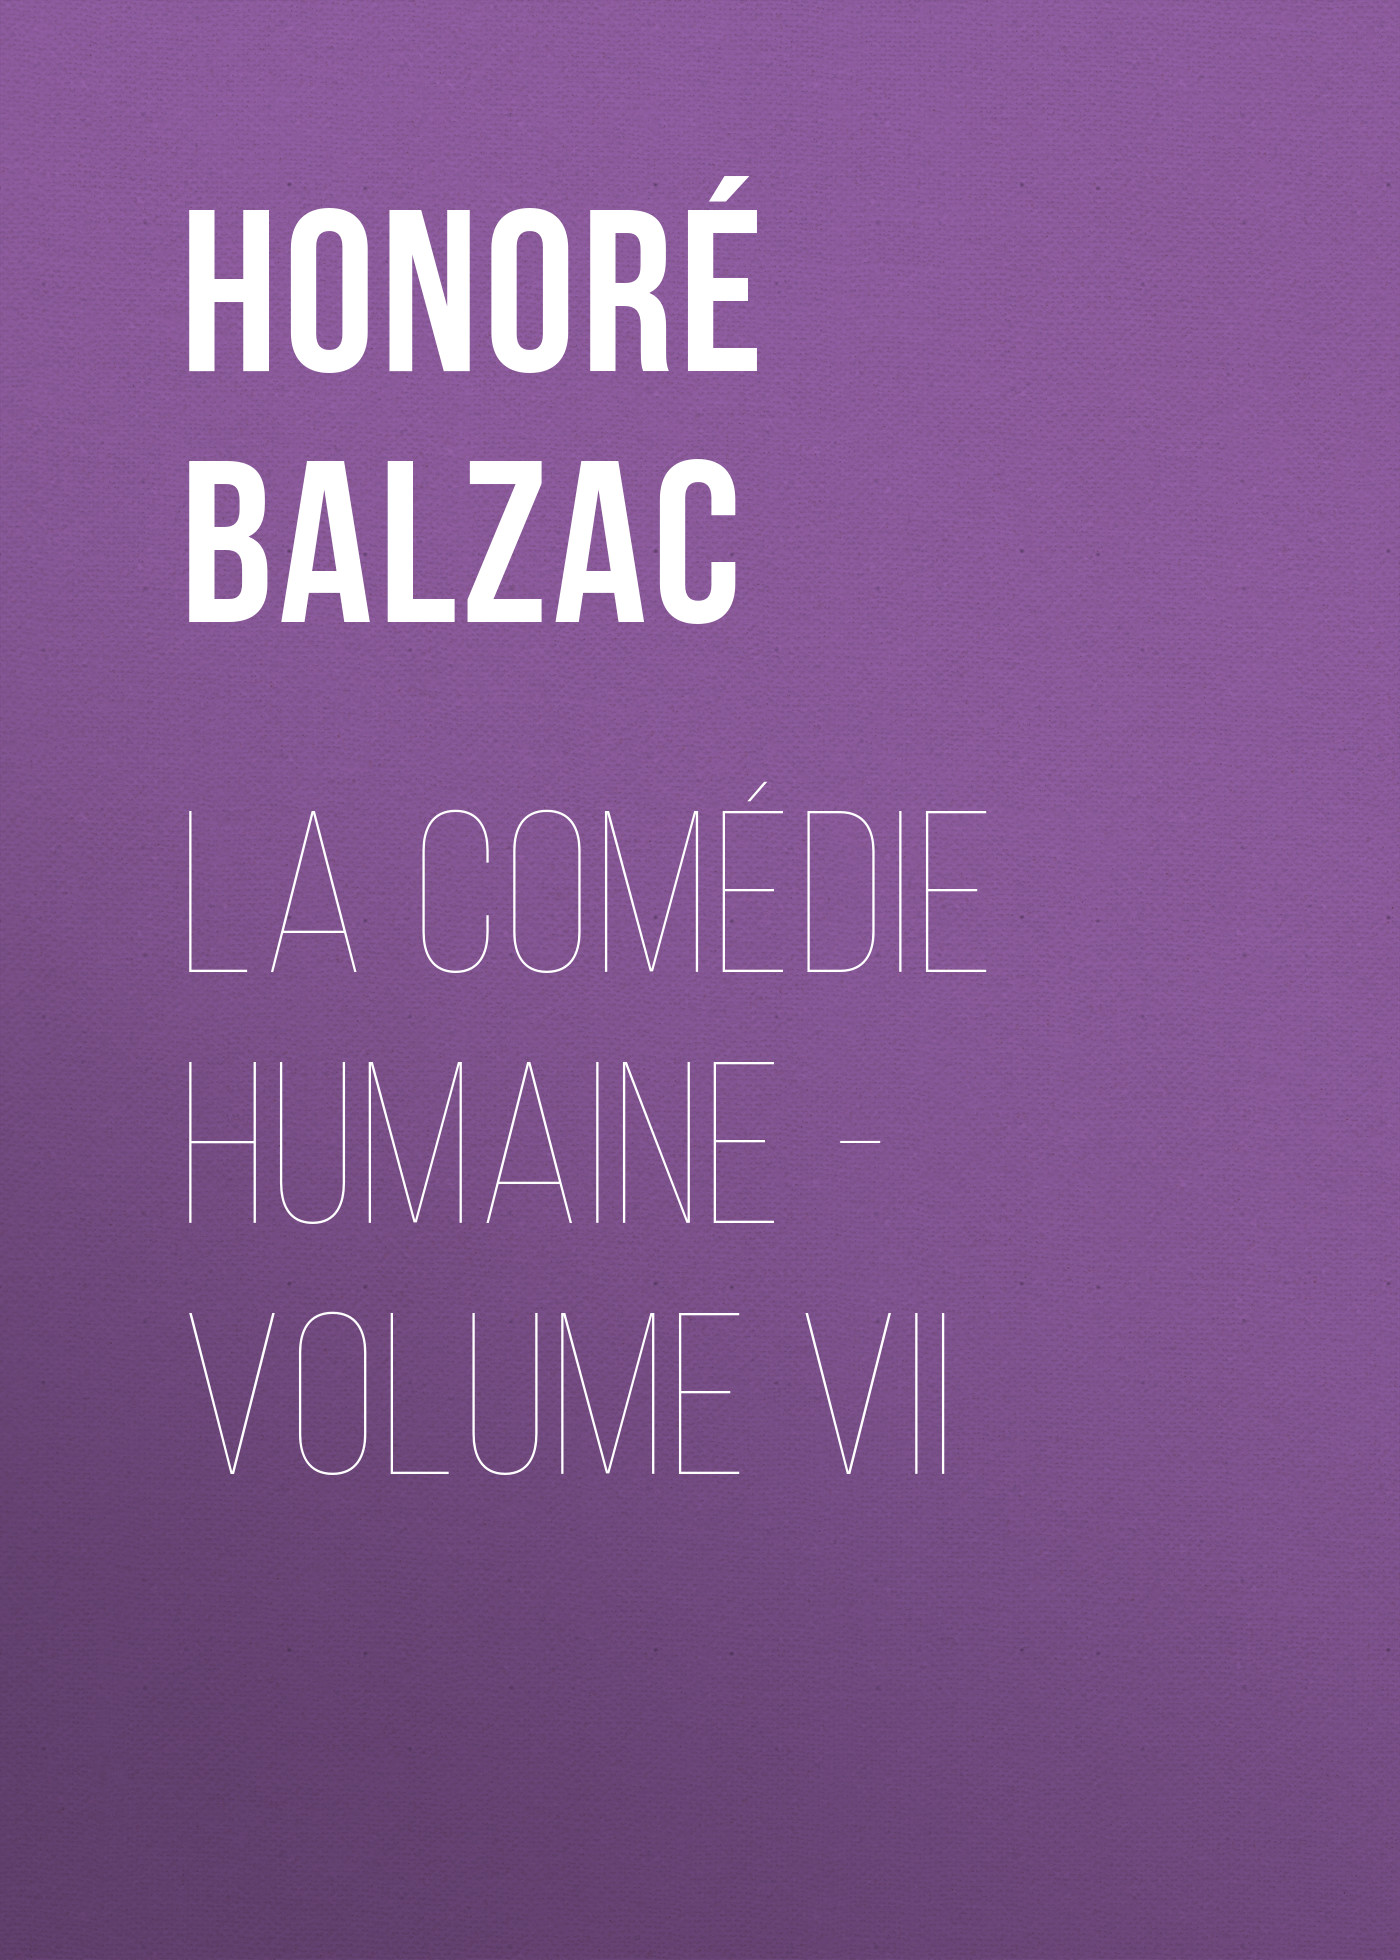 Книга La Comédie humaine – Volume VII из серии , созданная Honoré Balzac, может относится к жанру Зарубежная старинная литература, Зарубежная классика. Стоимость электронной книги La Comédie humaine – Volume VII с идентификатором 24177004 составляет 0 руб.